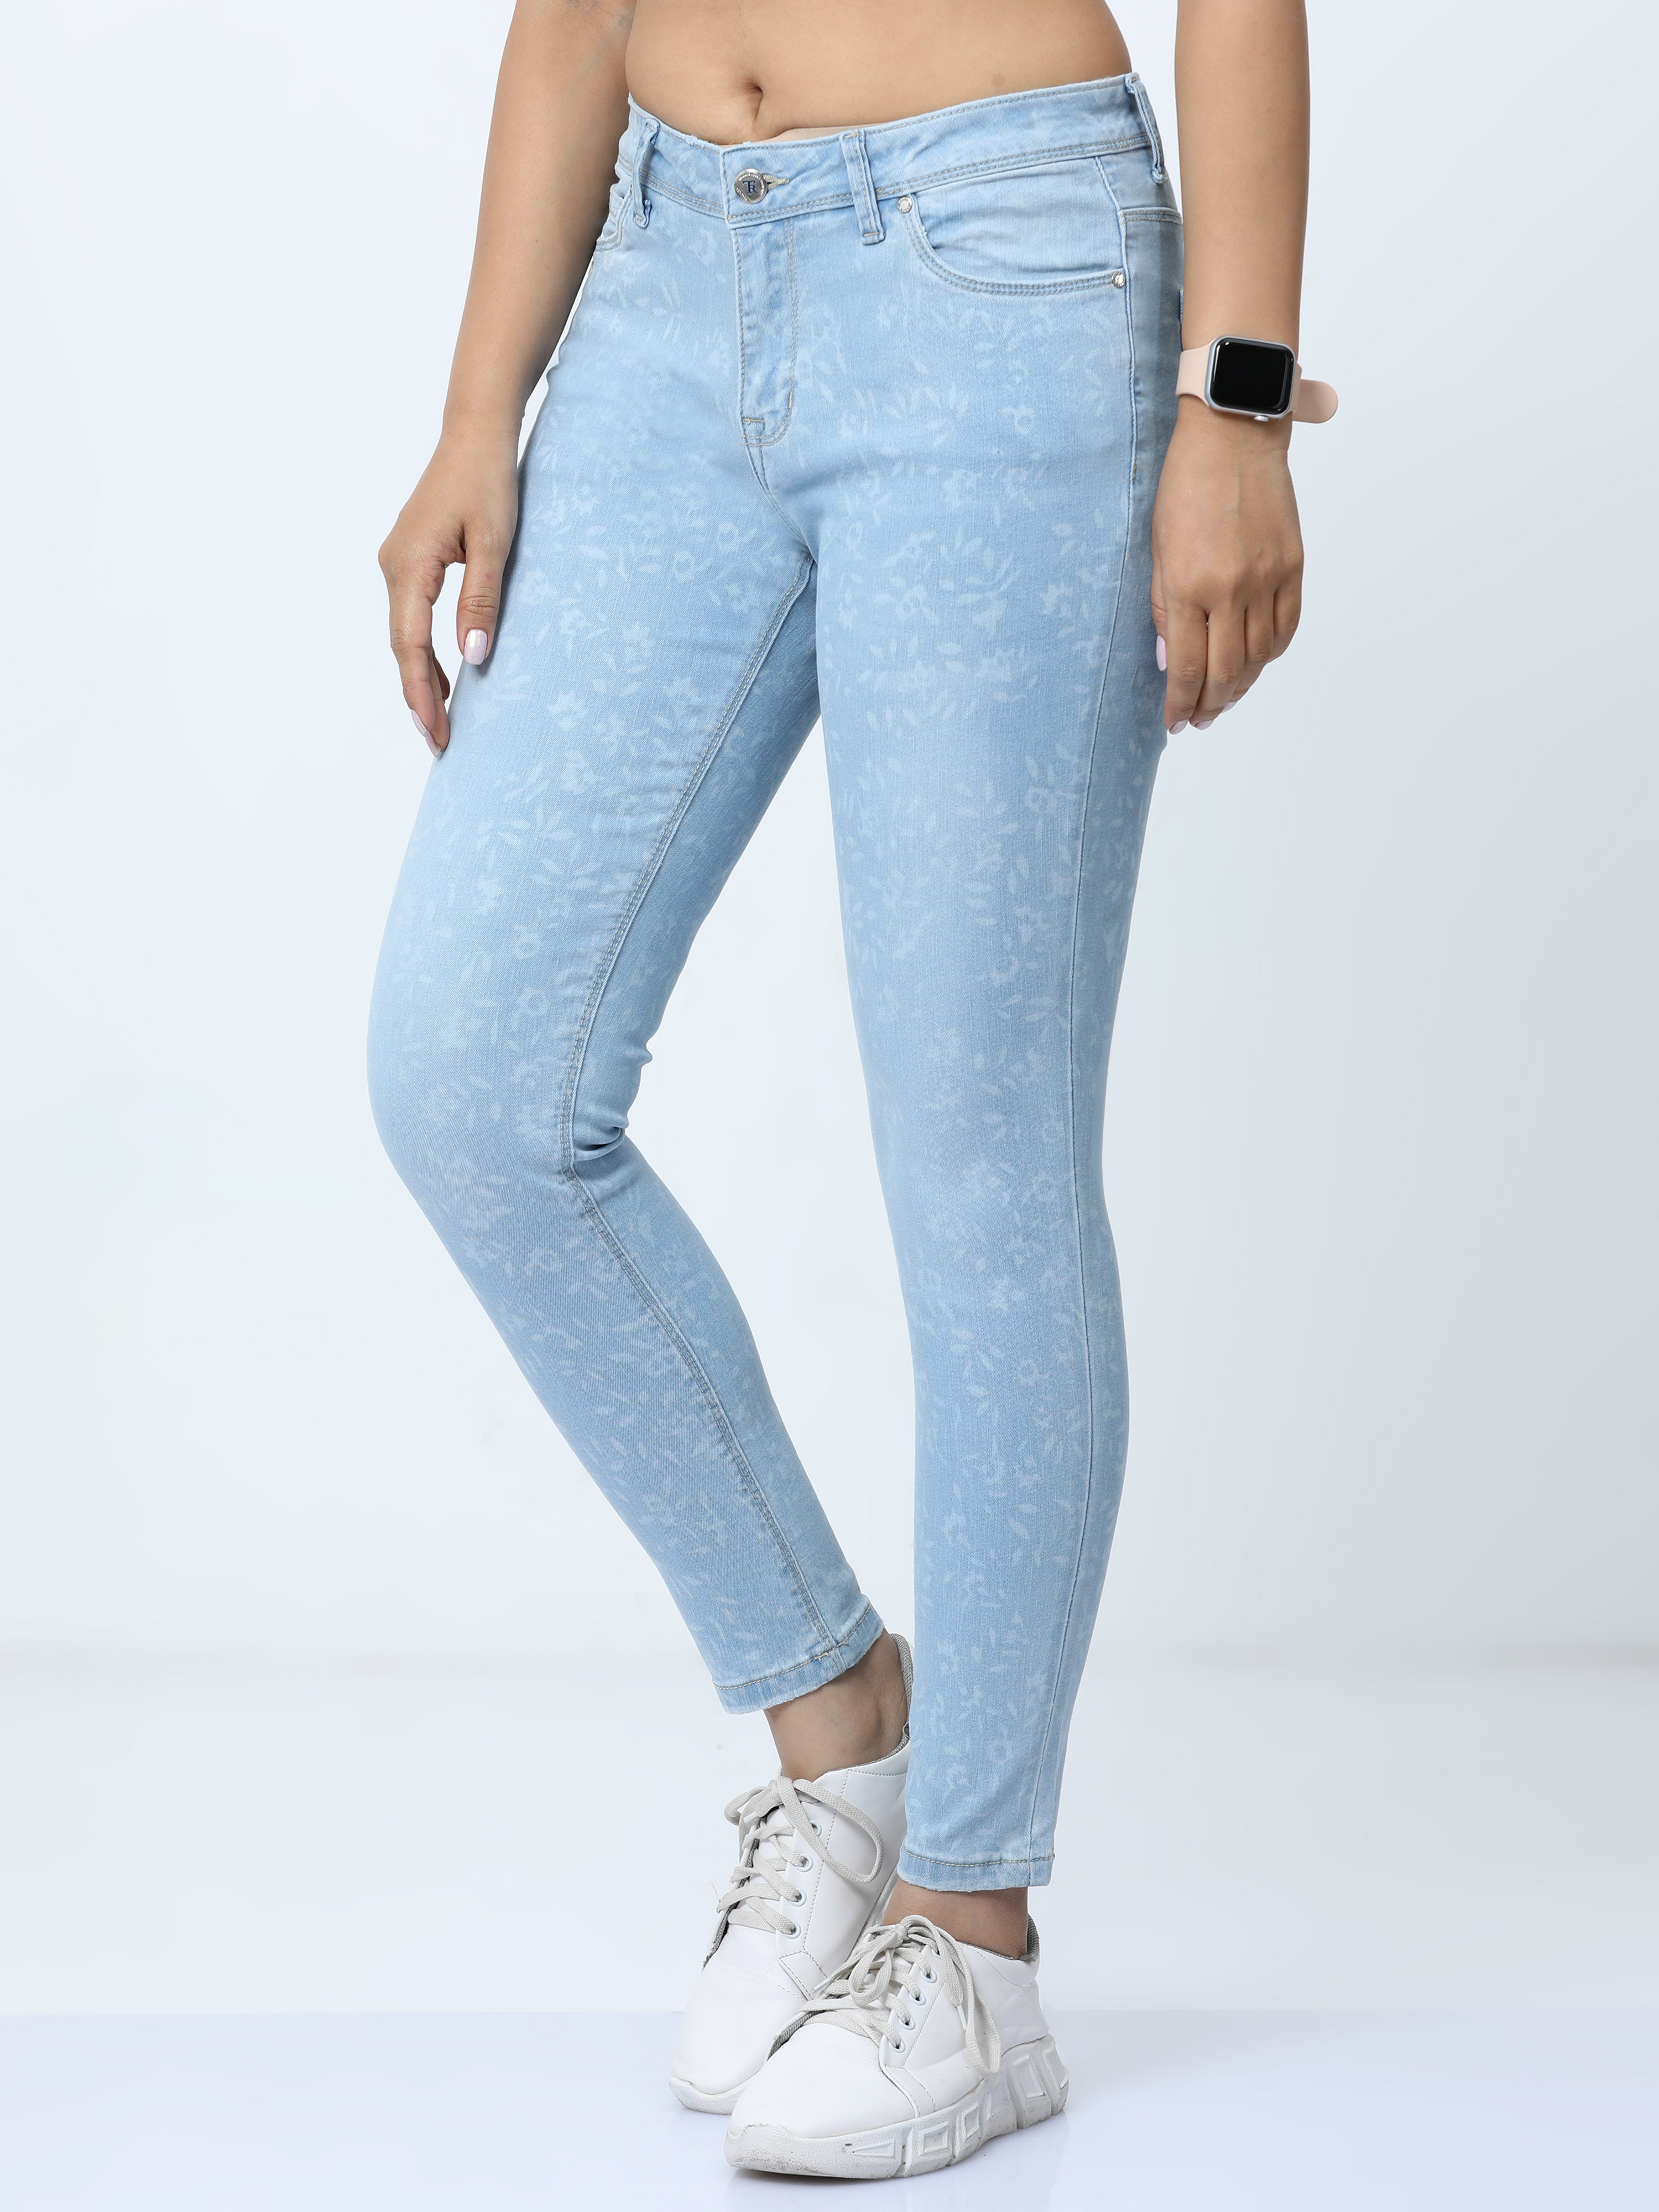 Pantone mild bleach womens slim fit jeans